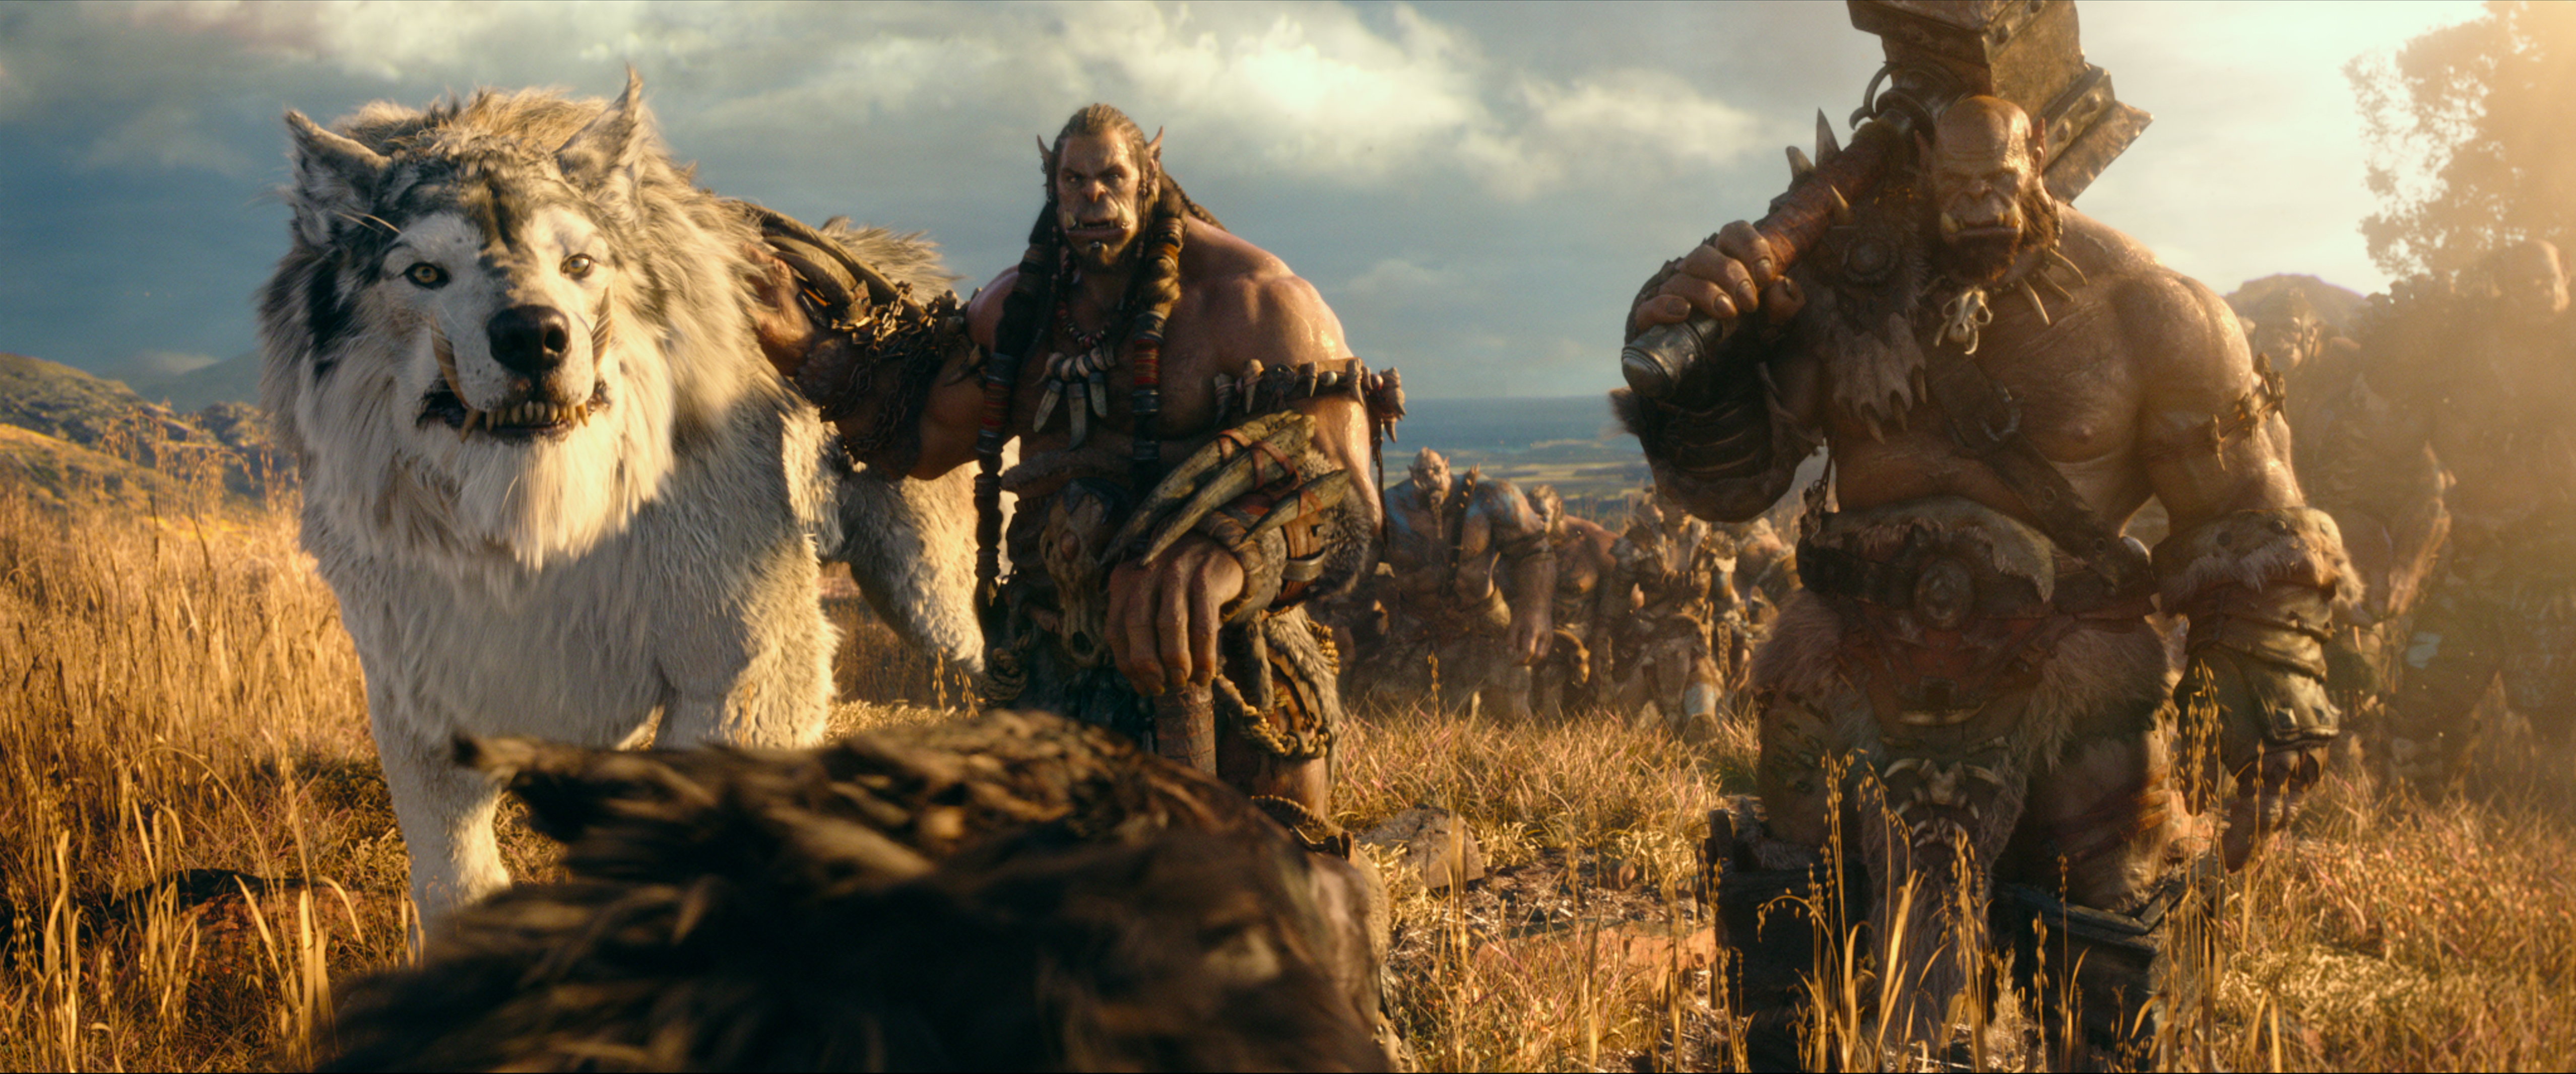 Warcraft the movie